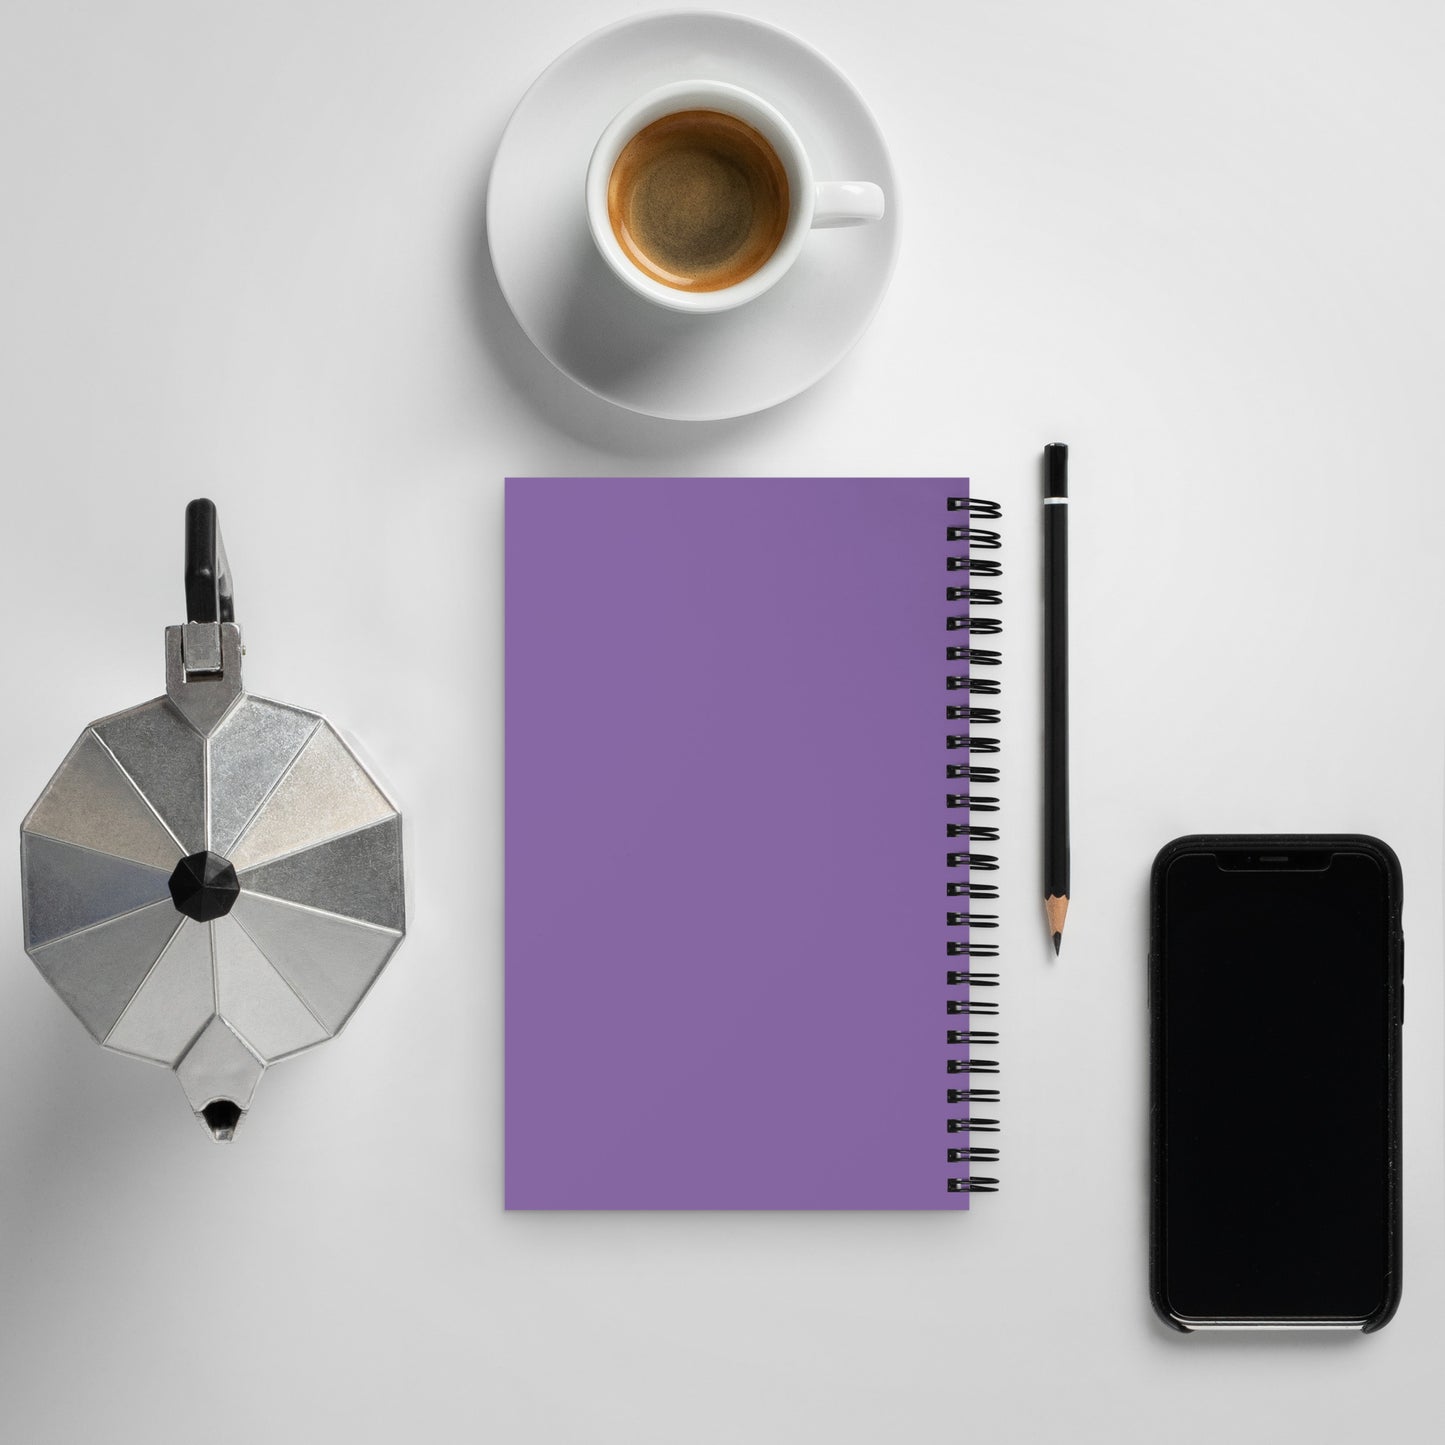 Spiral notebook = purple